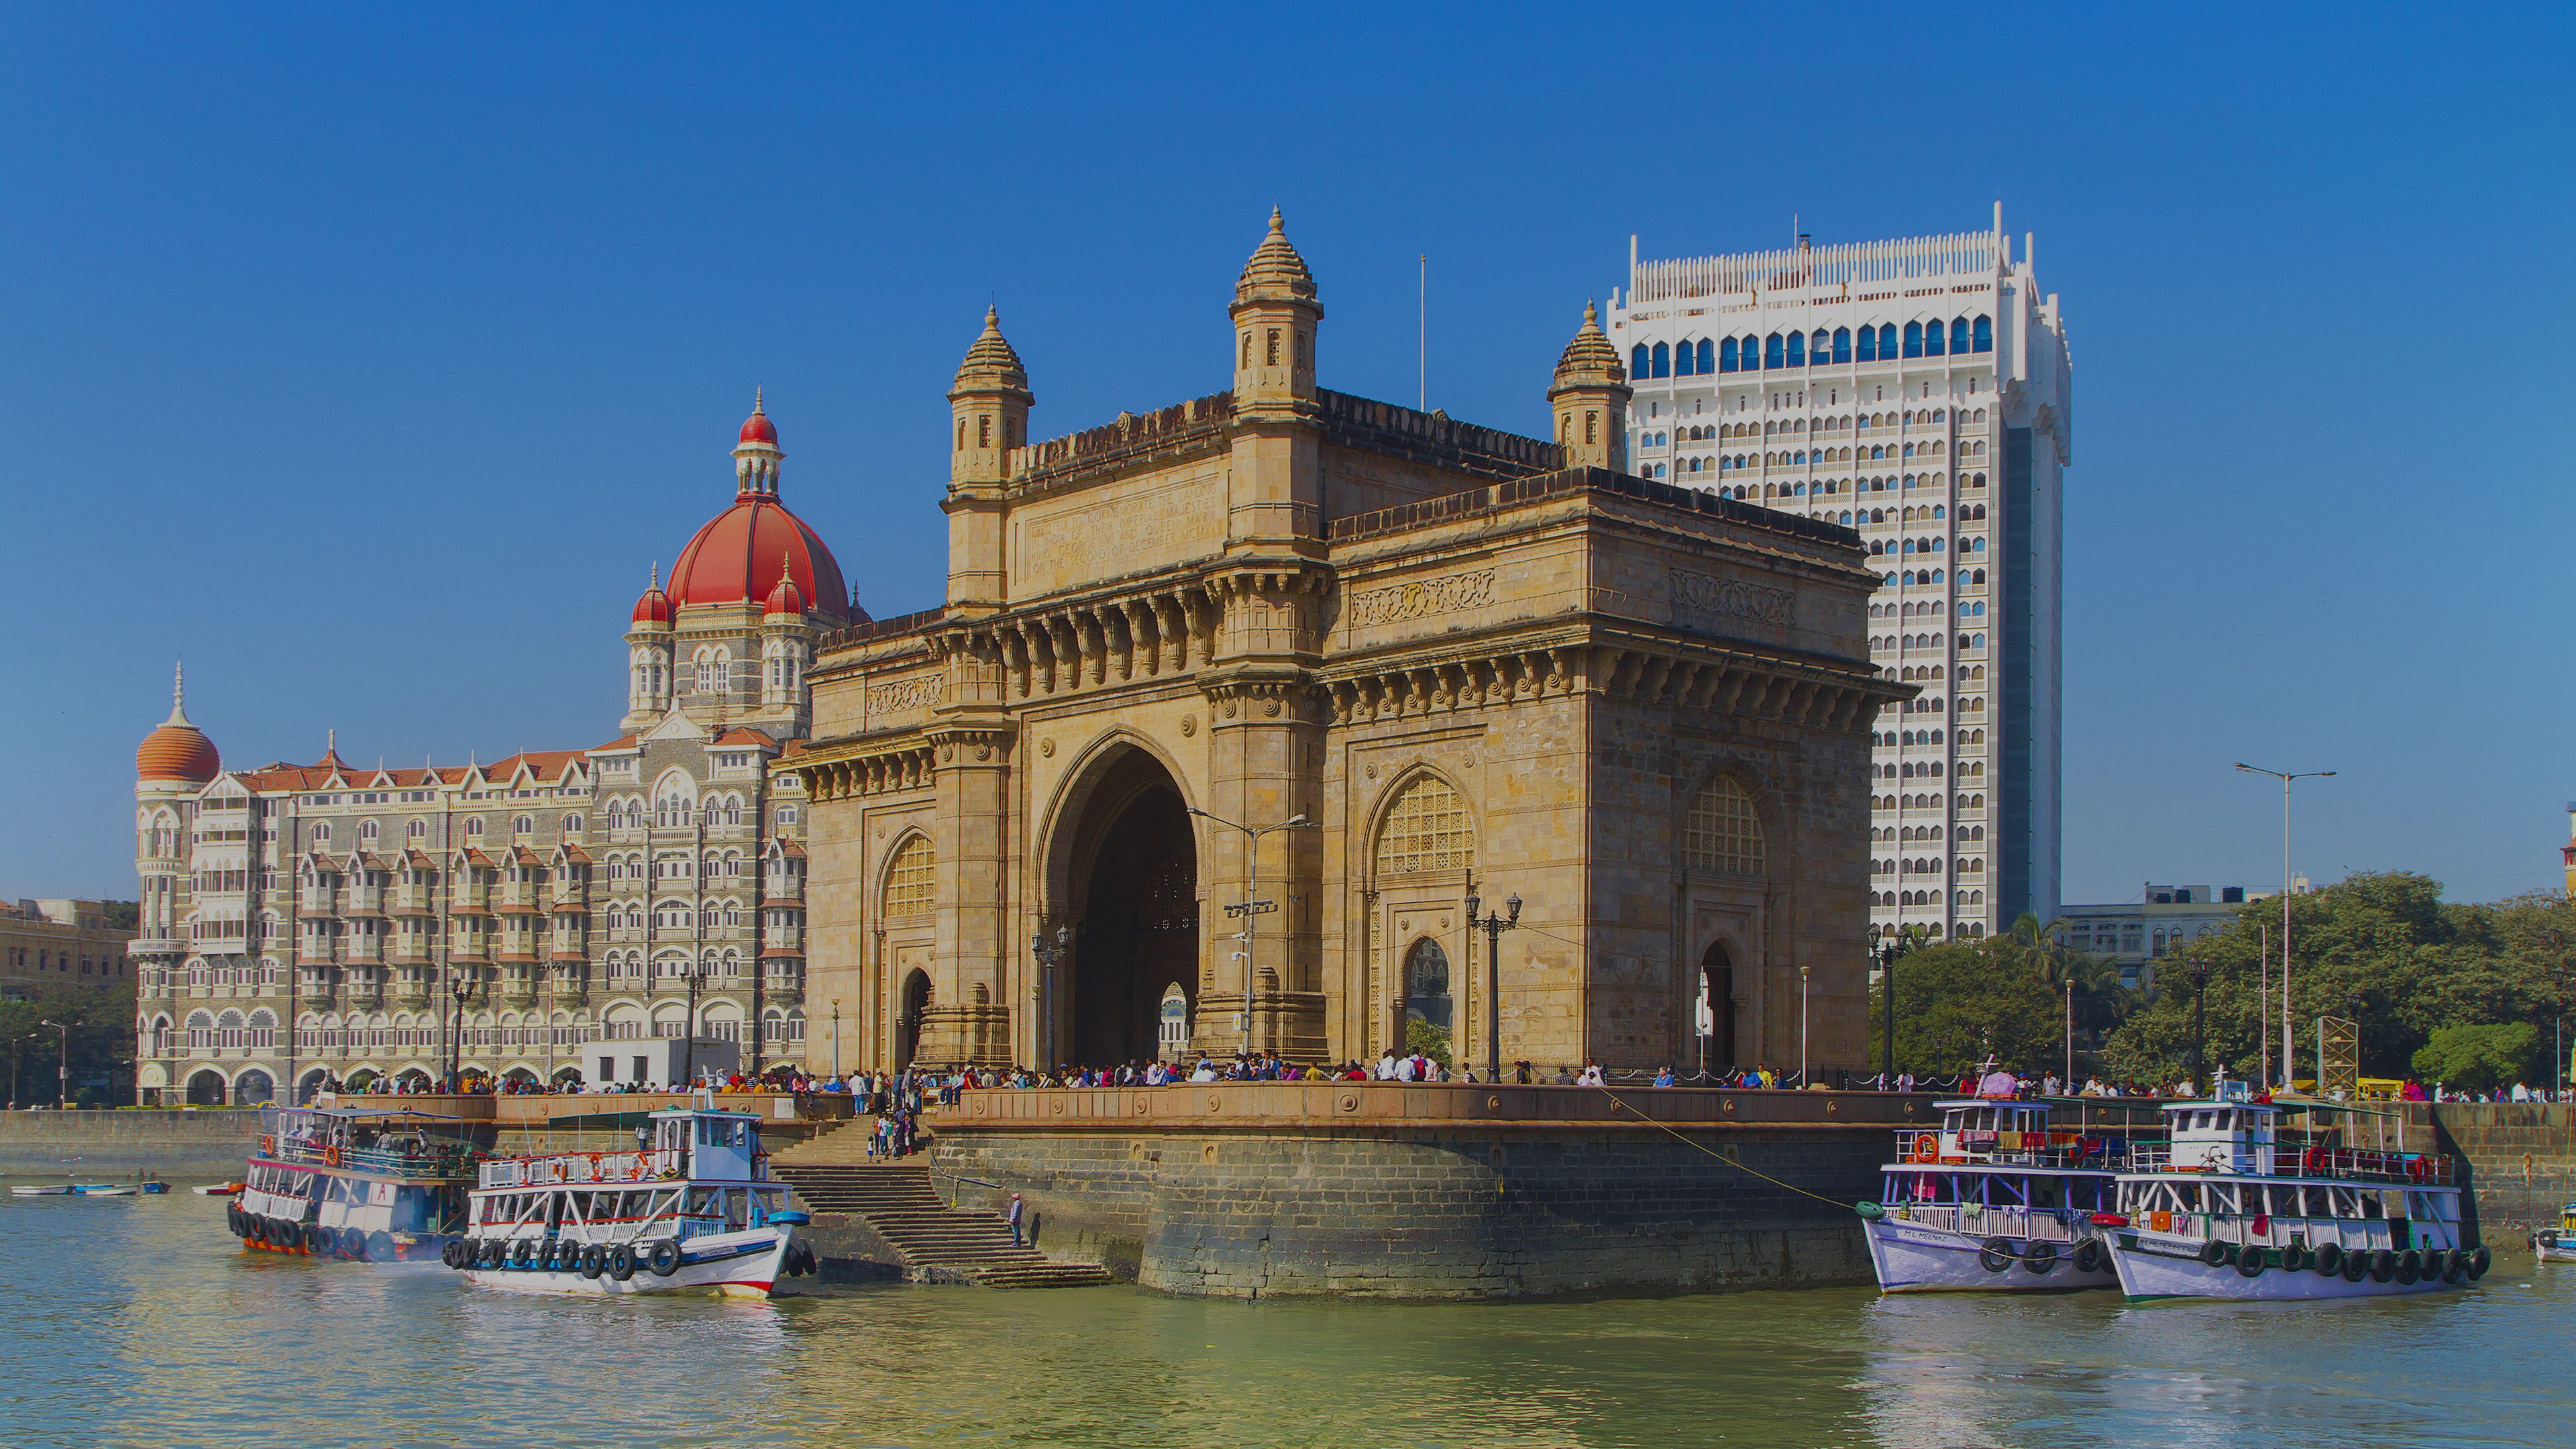 Mumbai (Bombay) Cruise, India | Celebrity Cruises, Asia